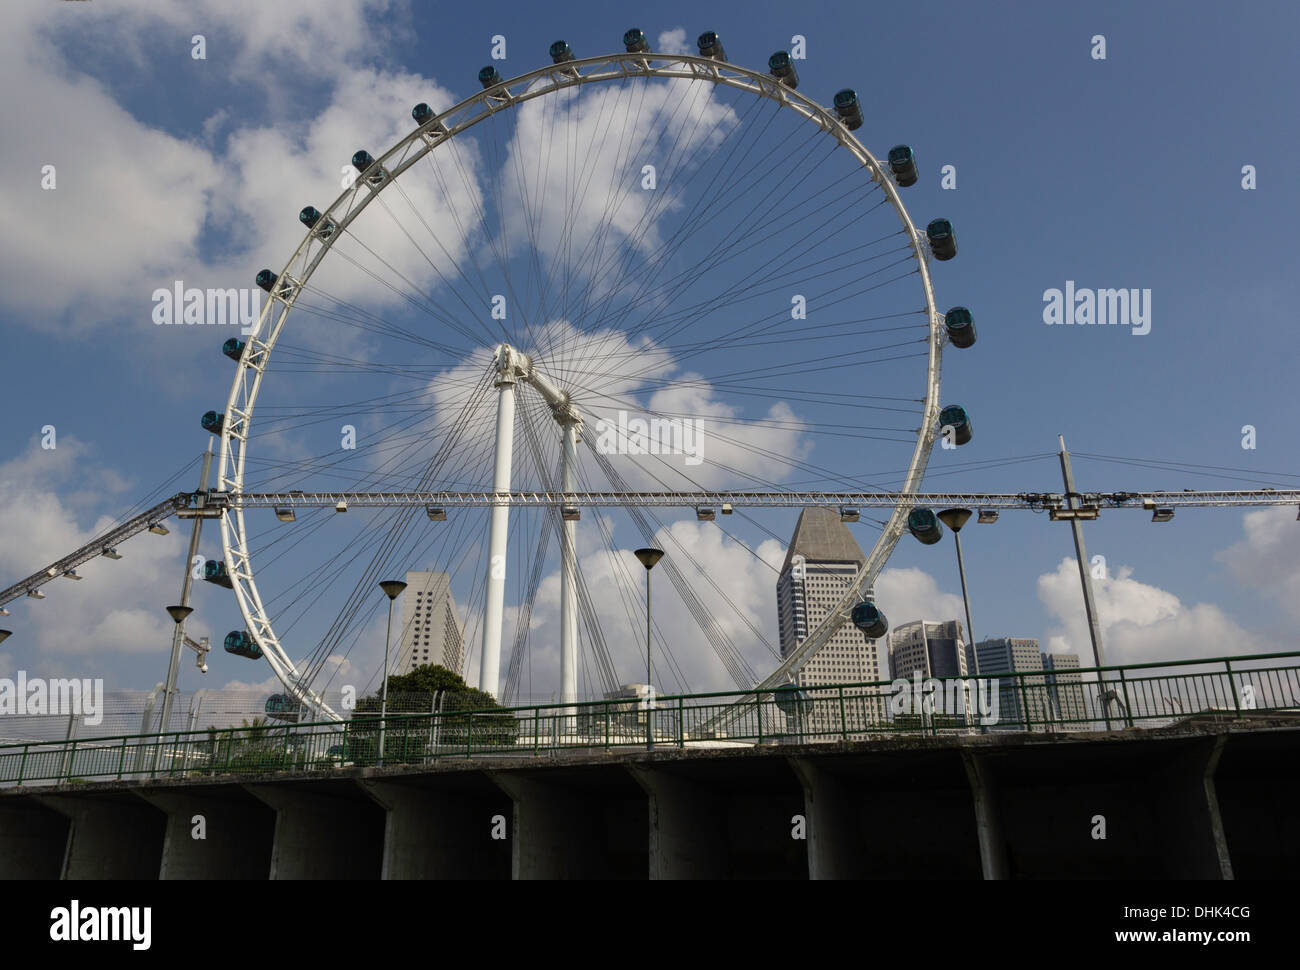 Der Kreis der Singapore Flyer zusammen mit Vorbereitung der Formel1-Rennen über eine Brücke. Beleuchtungseinrichtungen für das Rennen. Stockfoto